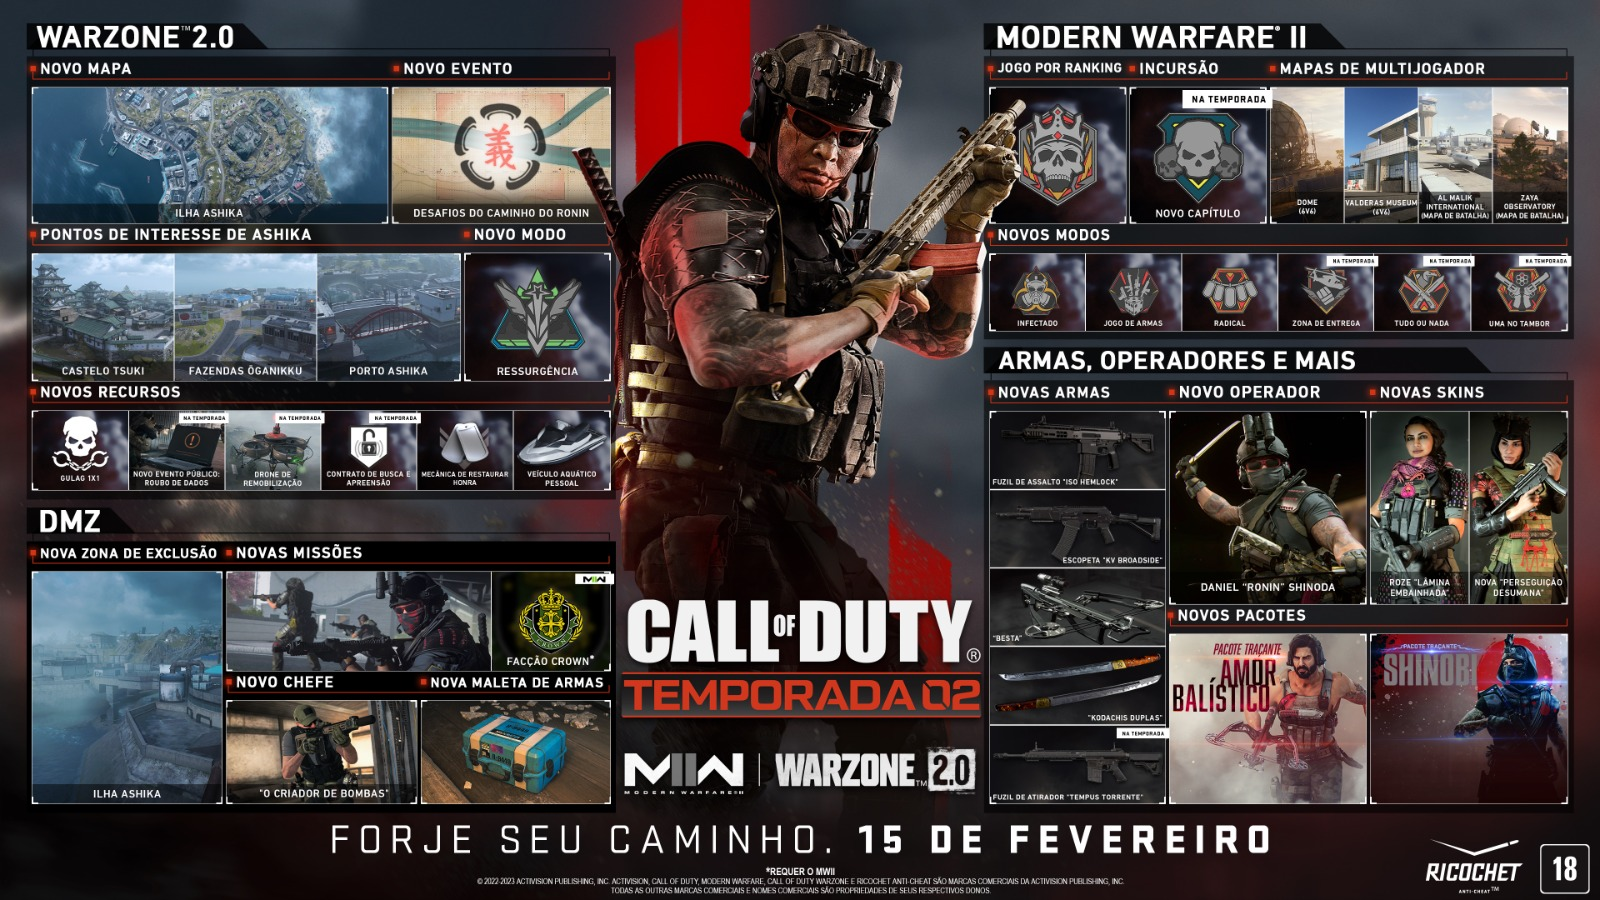 Quais são os requisitos para jogar Call of Duty: Modern Warfare 2